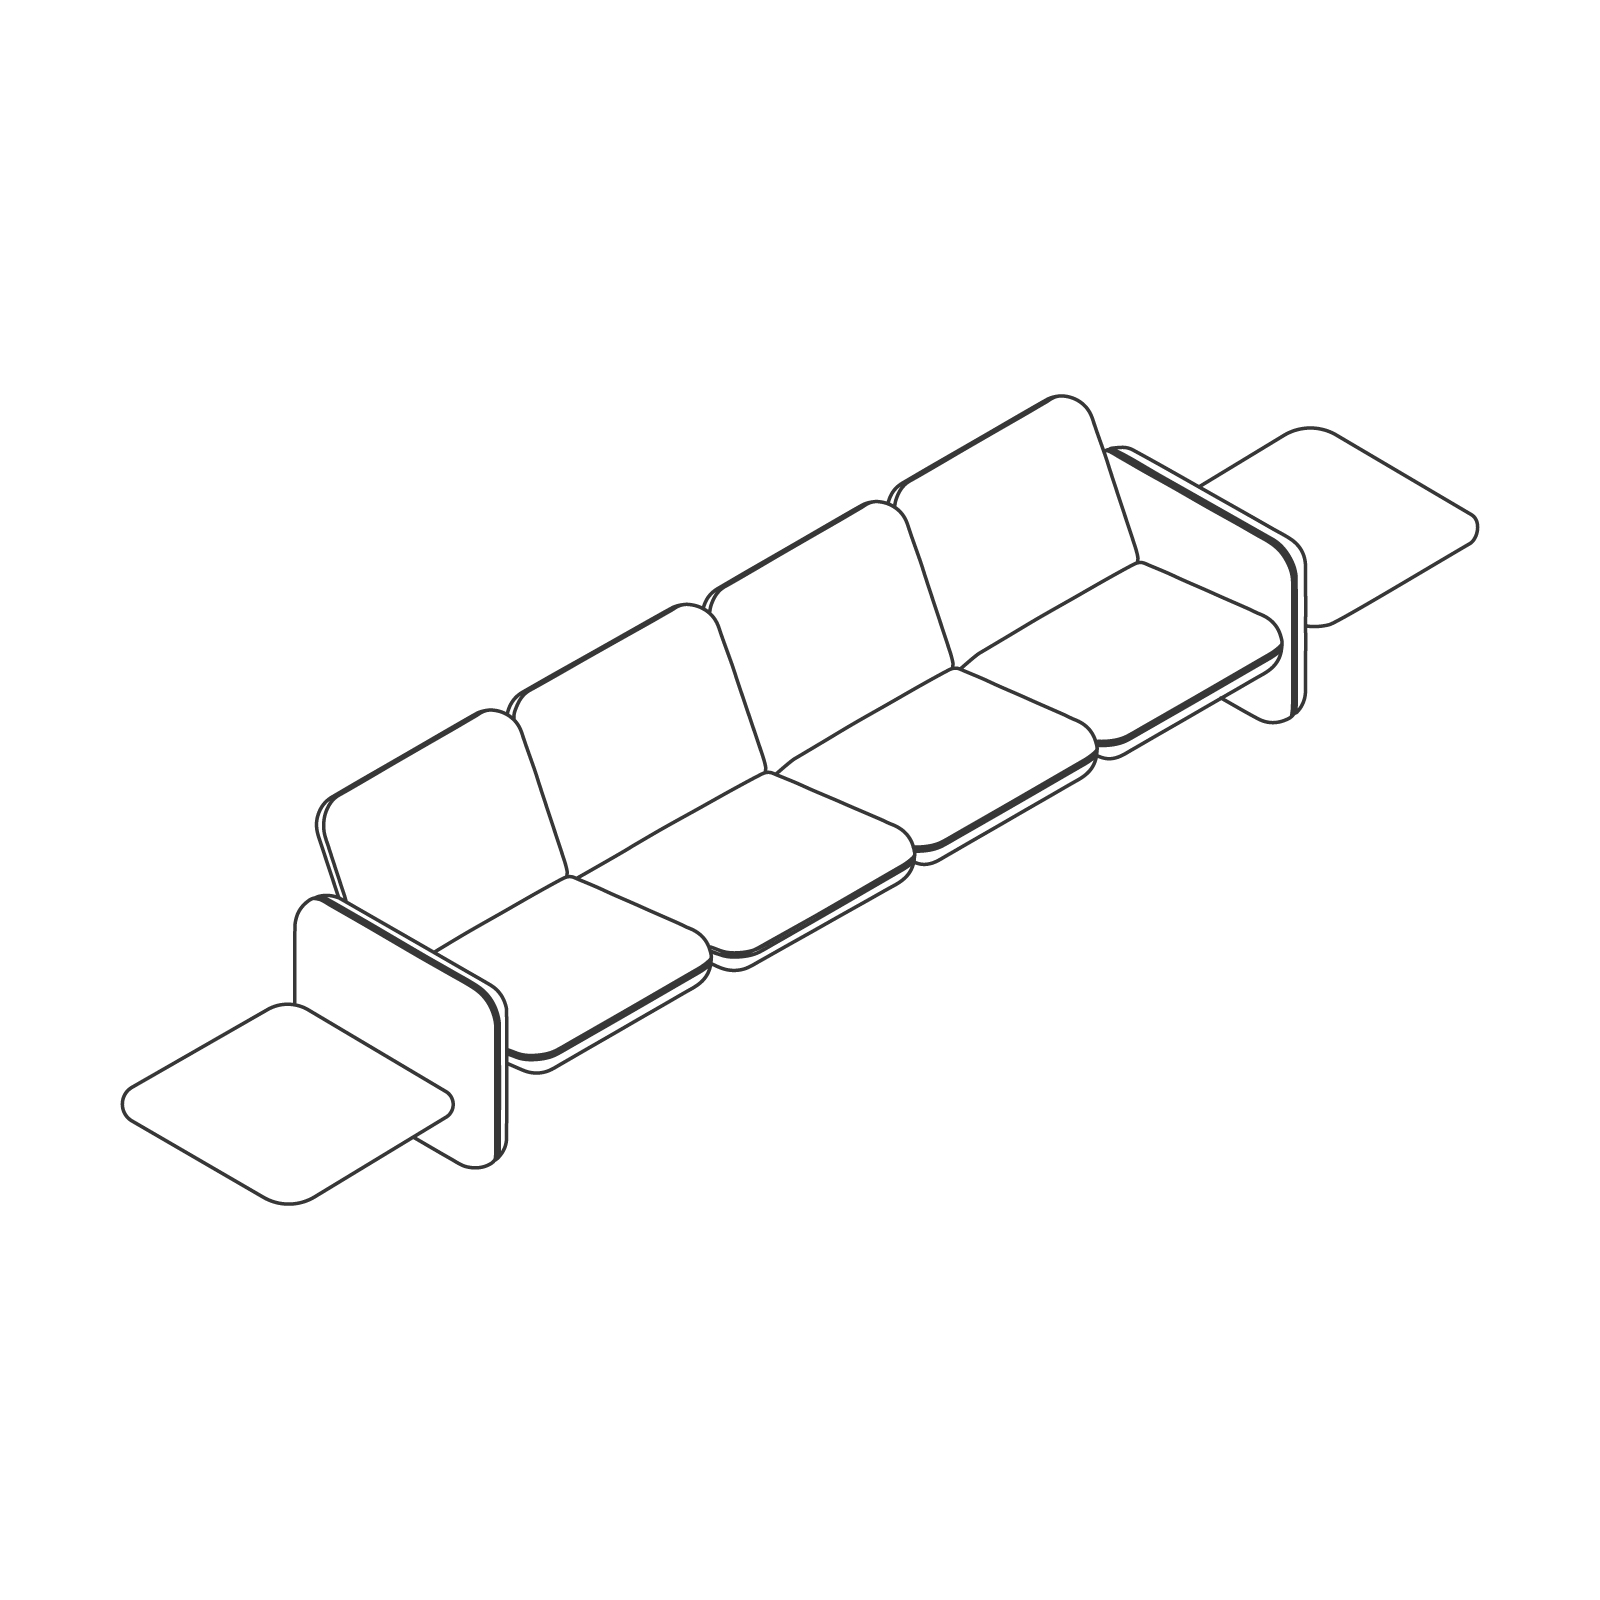 Dibujo en líneas - Conjunto de sofás modulares Wilkes – Mesa a la izquierda – 4 asientos – Mesa a la derecha